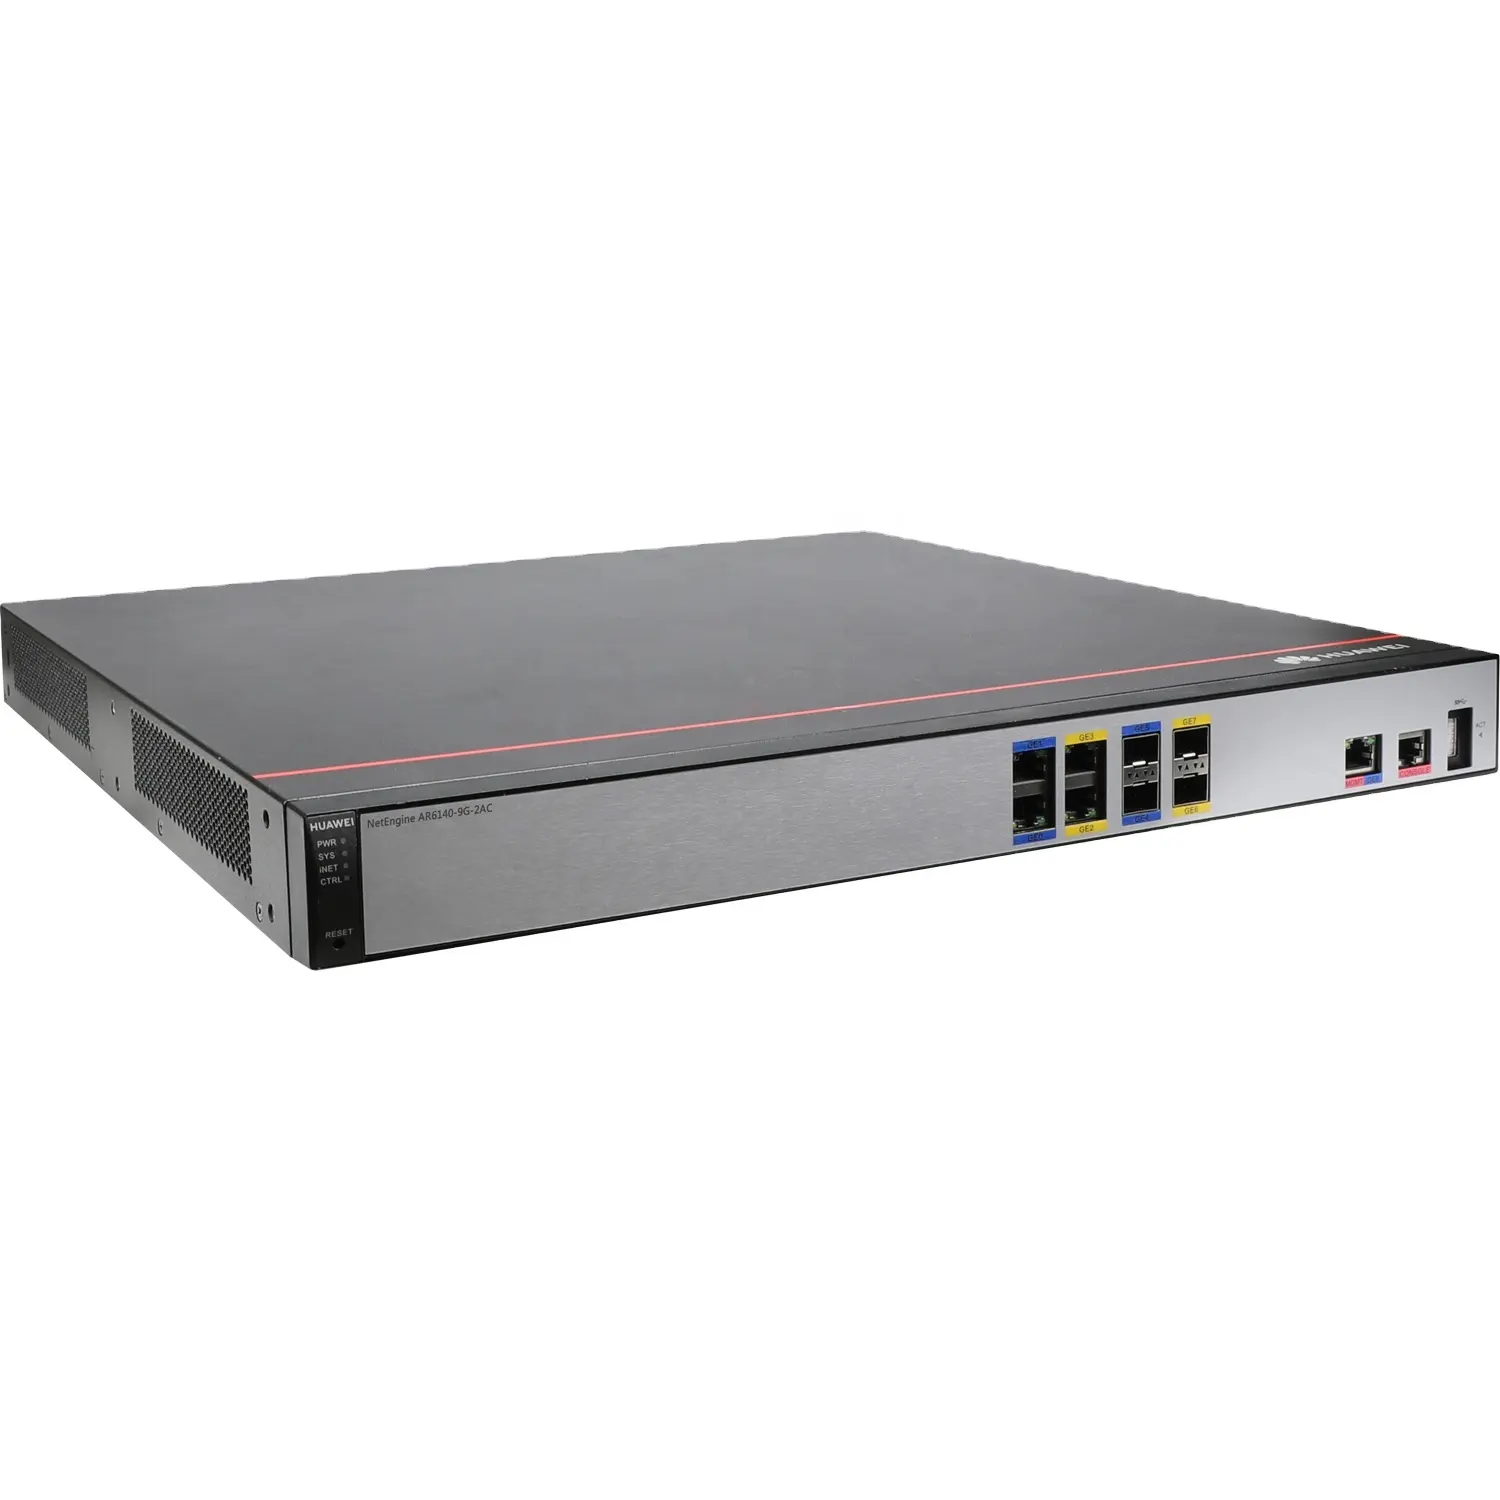 Huawei entreprise routeur réseau NetEngine AR6140-9G-2AC intègre SD-WAN routage commutation sécurité VPN et MPLS fonction